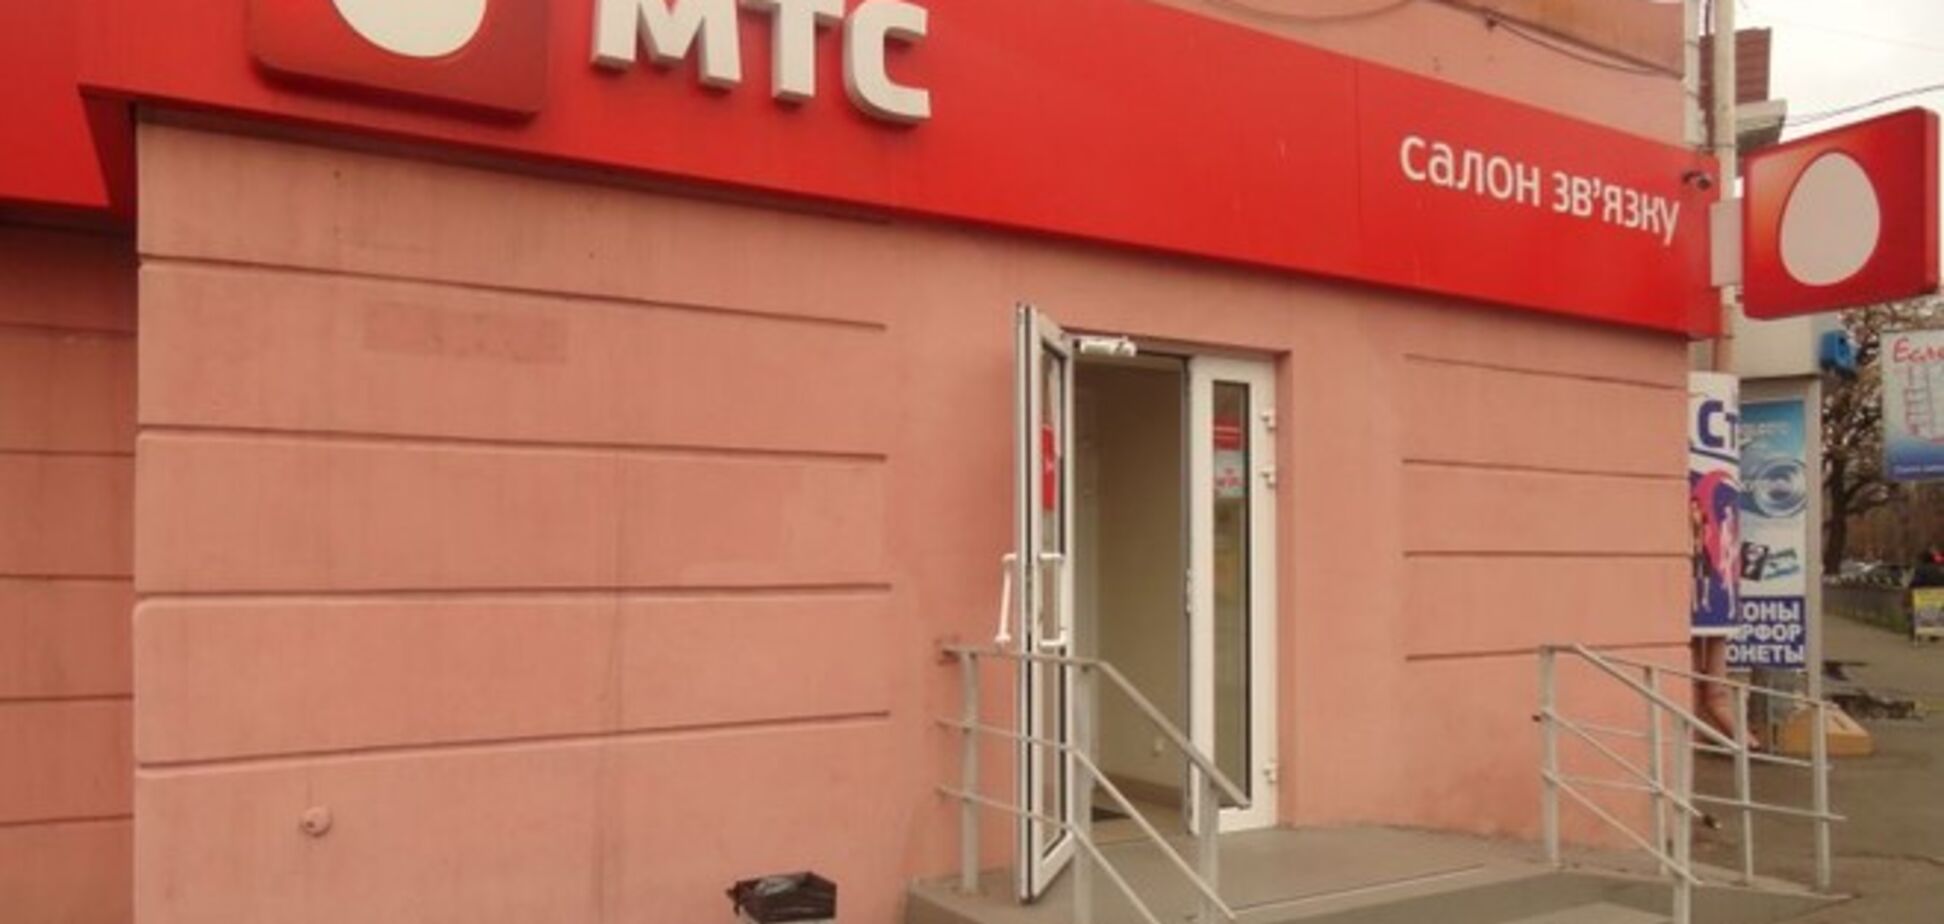 В ряде городов Донецкой области пропала связь МТС